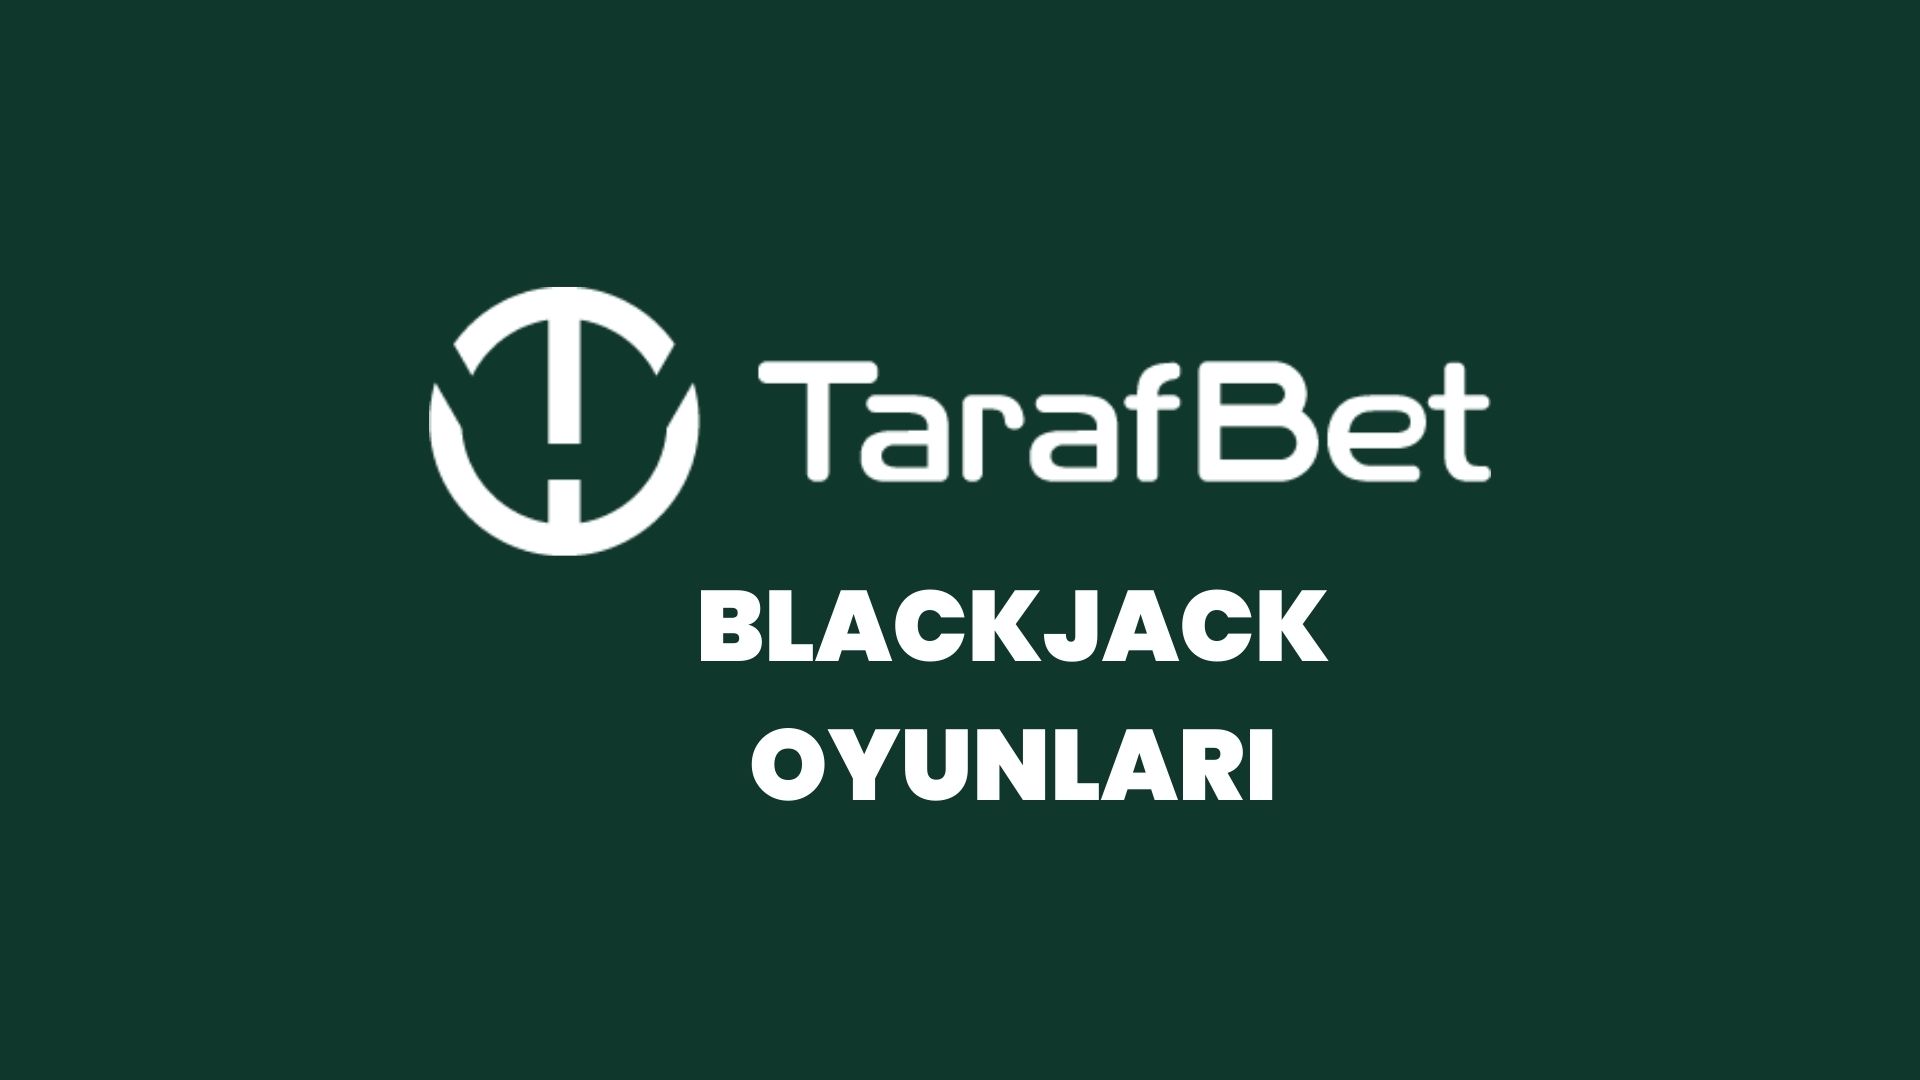 tarafbet-blackjack-oyunlari